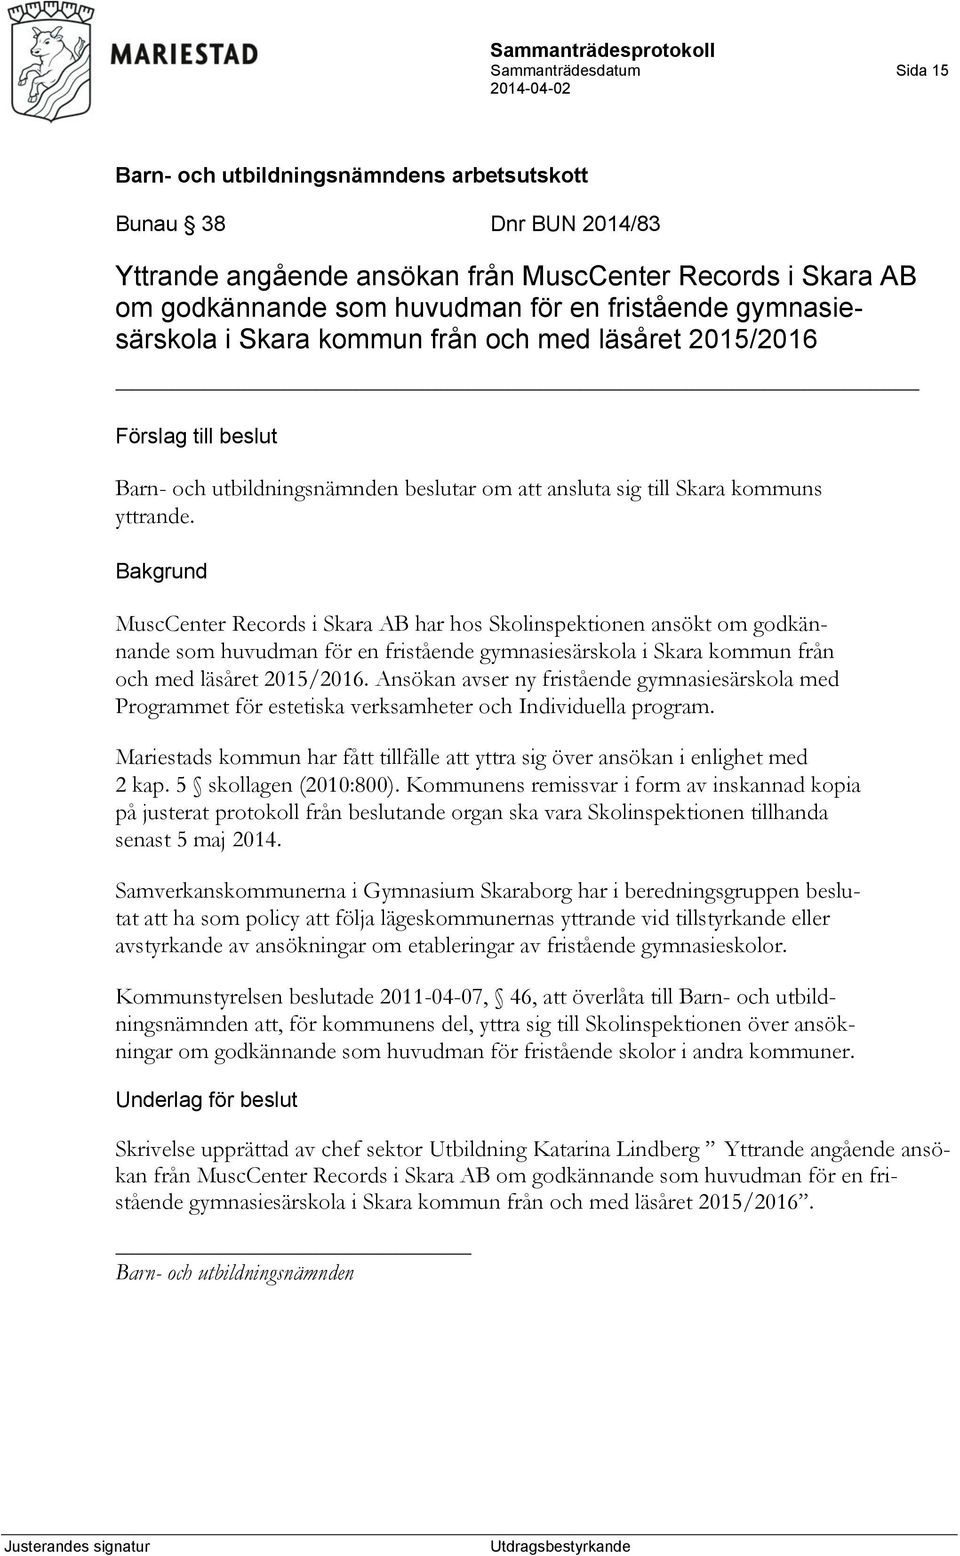 MuscCenter Records i Skara AB har hos Skolinspektionen ansökt om godkännande som huvudman för en fristående gymnasiesärskola i Skara kommun från och med läsåret 2015/2016.